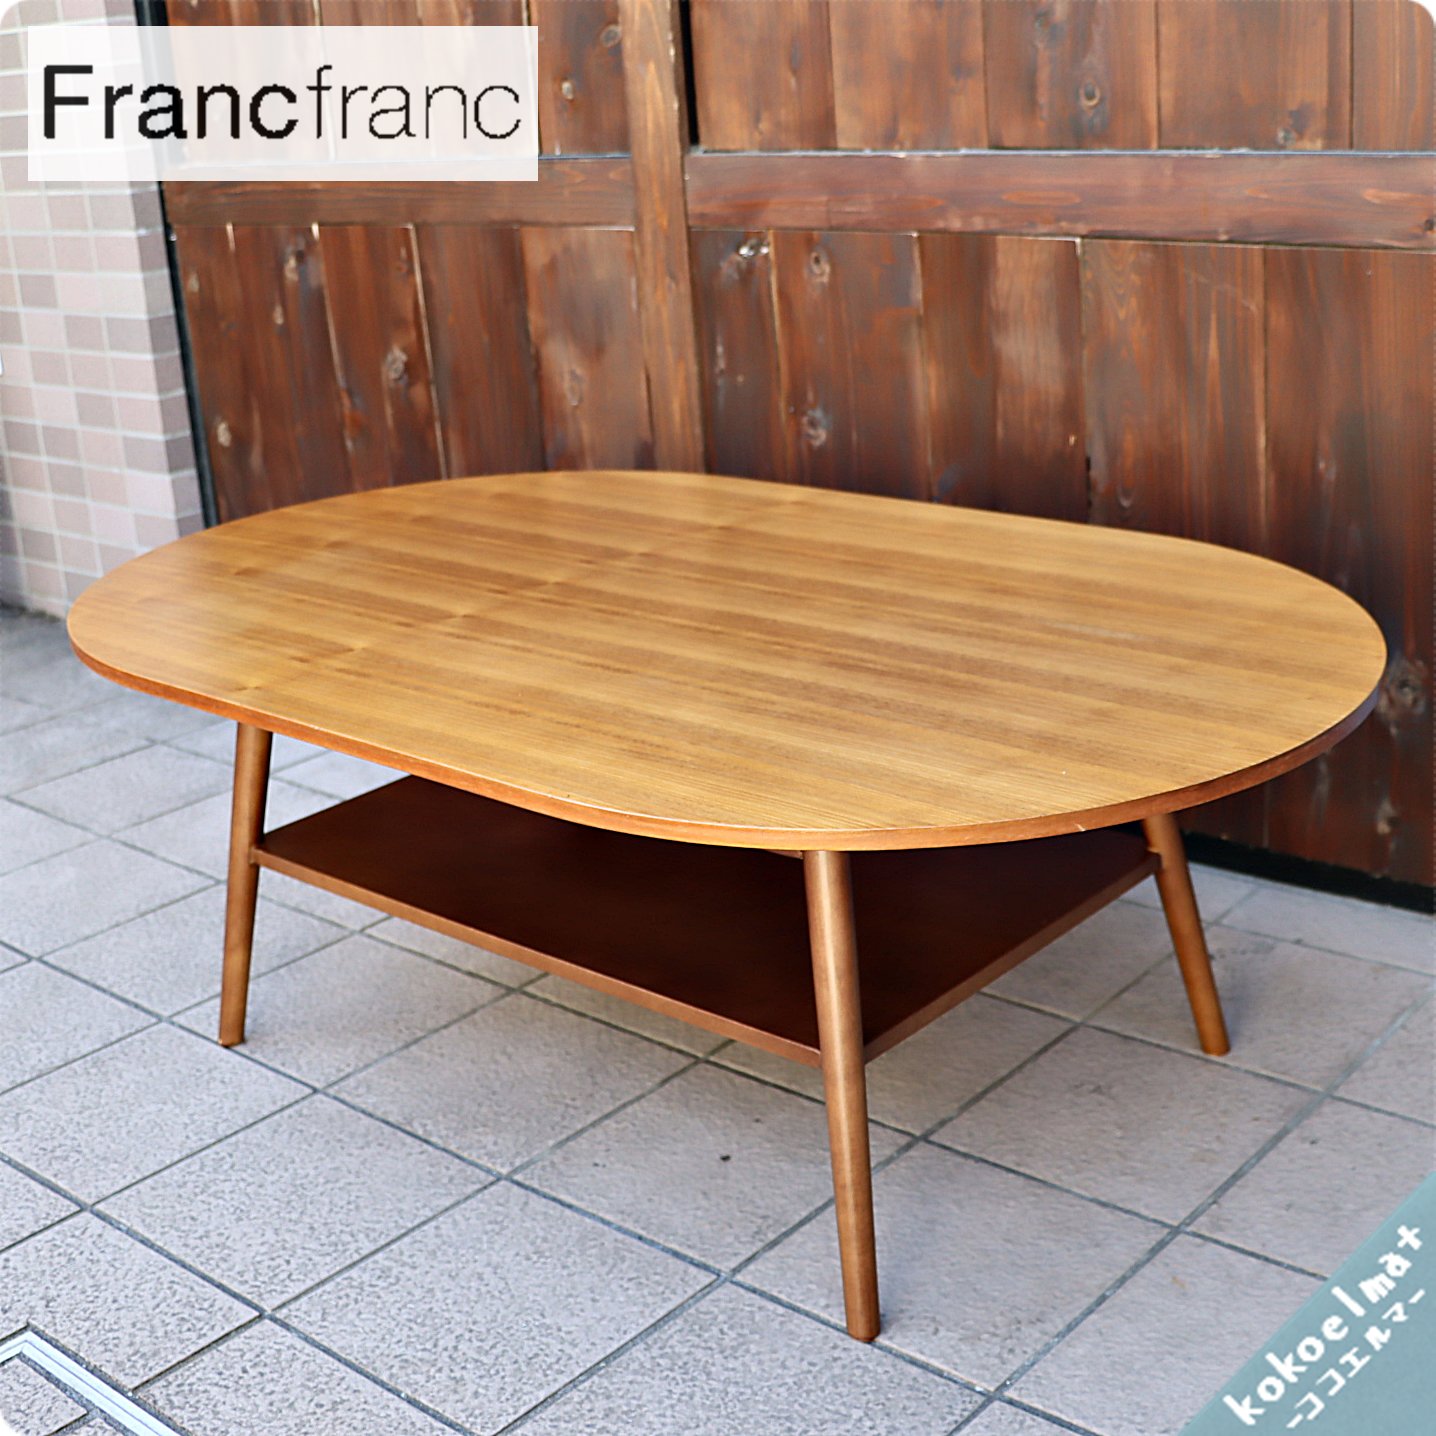 人気のFrancfranc(フランフラン)のTOY(トーイ)コーヒーテーブルです